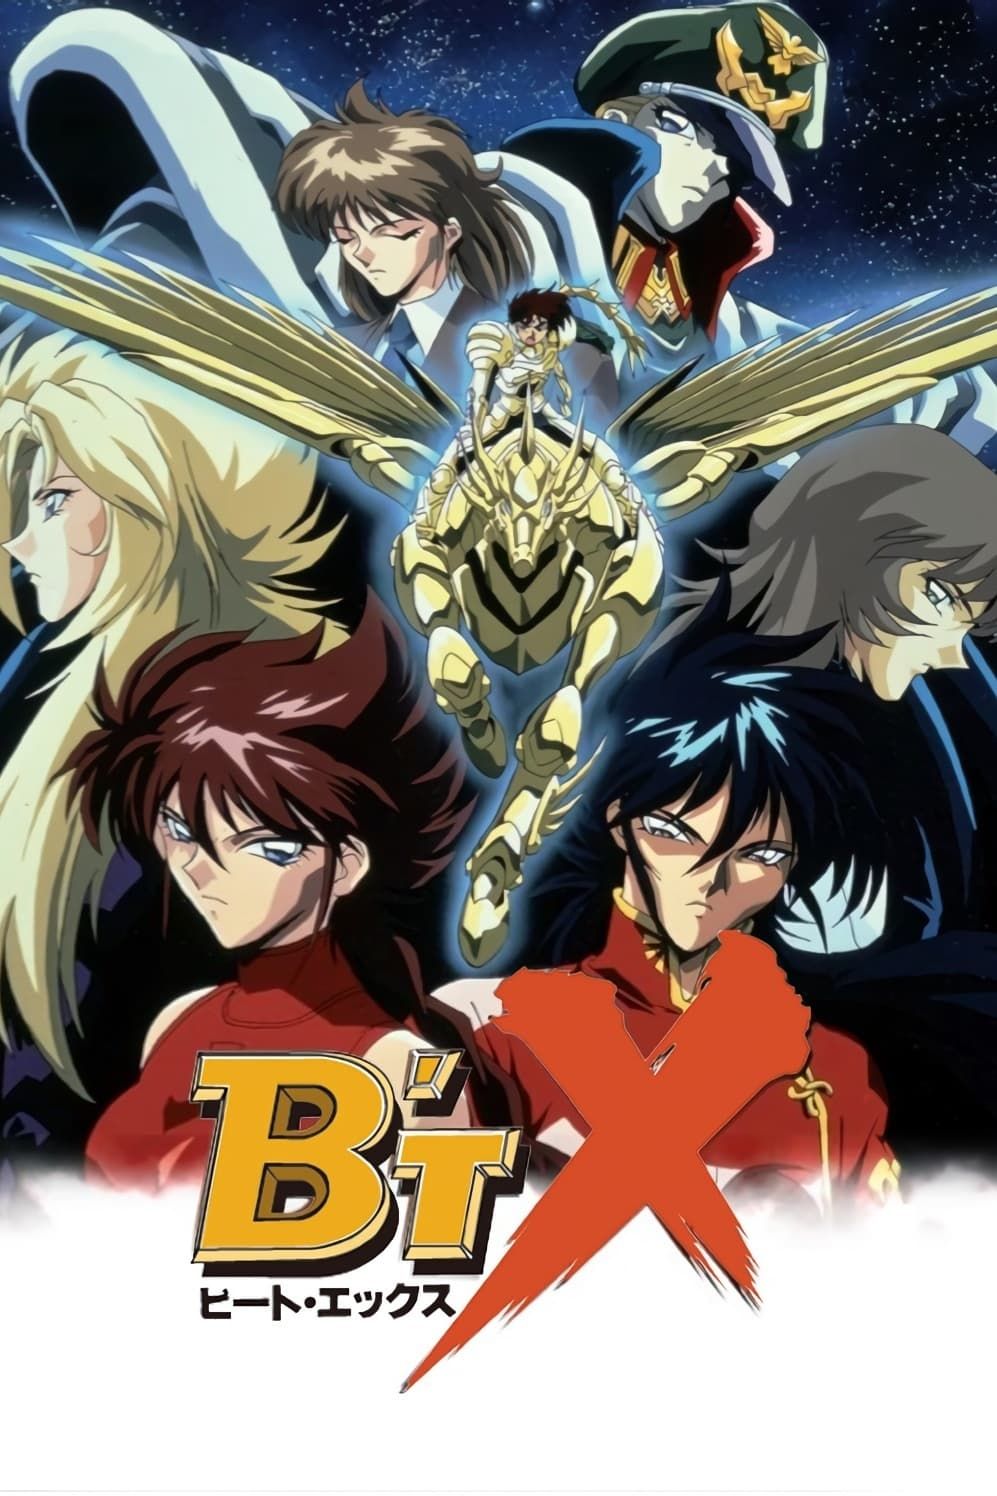 B'T X (TV) (Sub) Standard Version